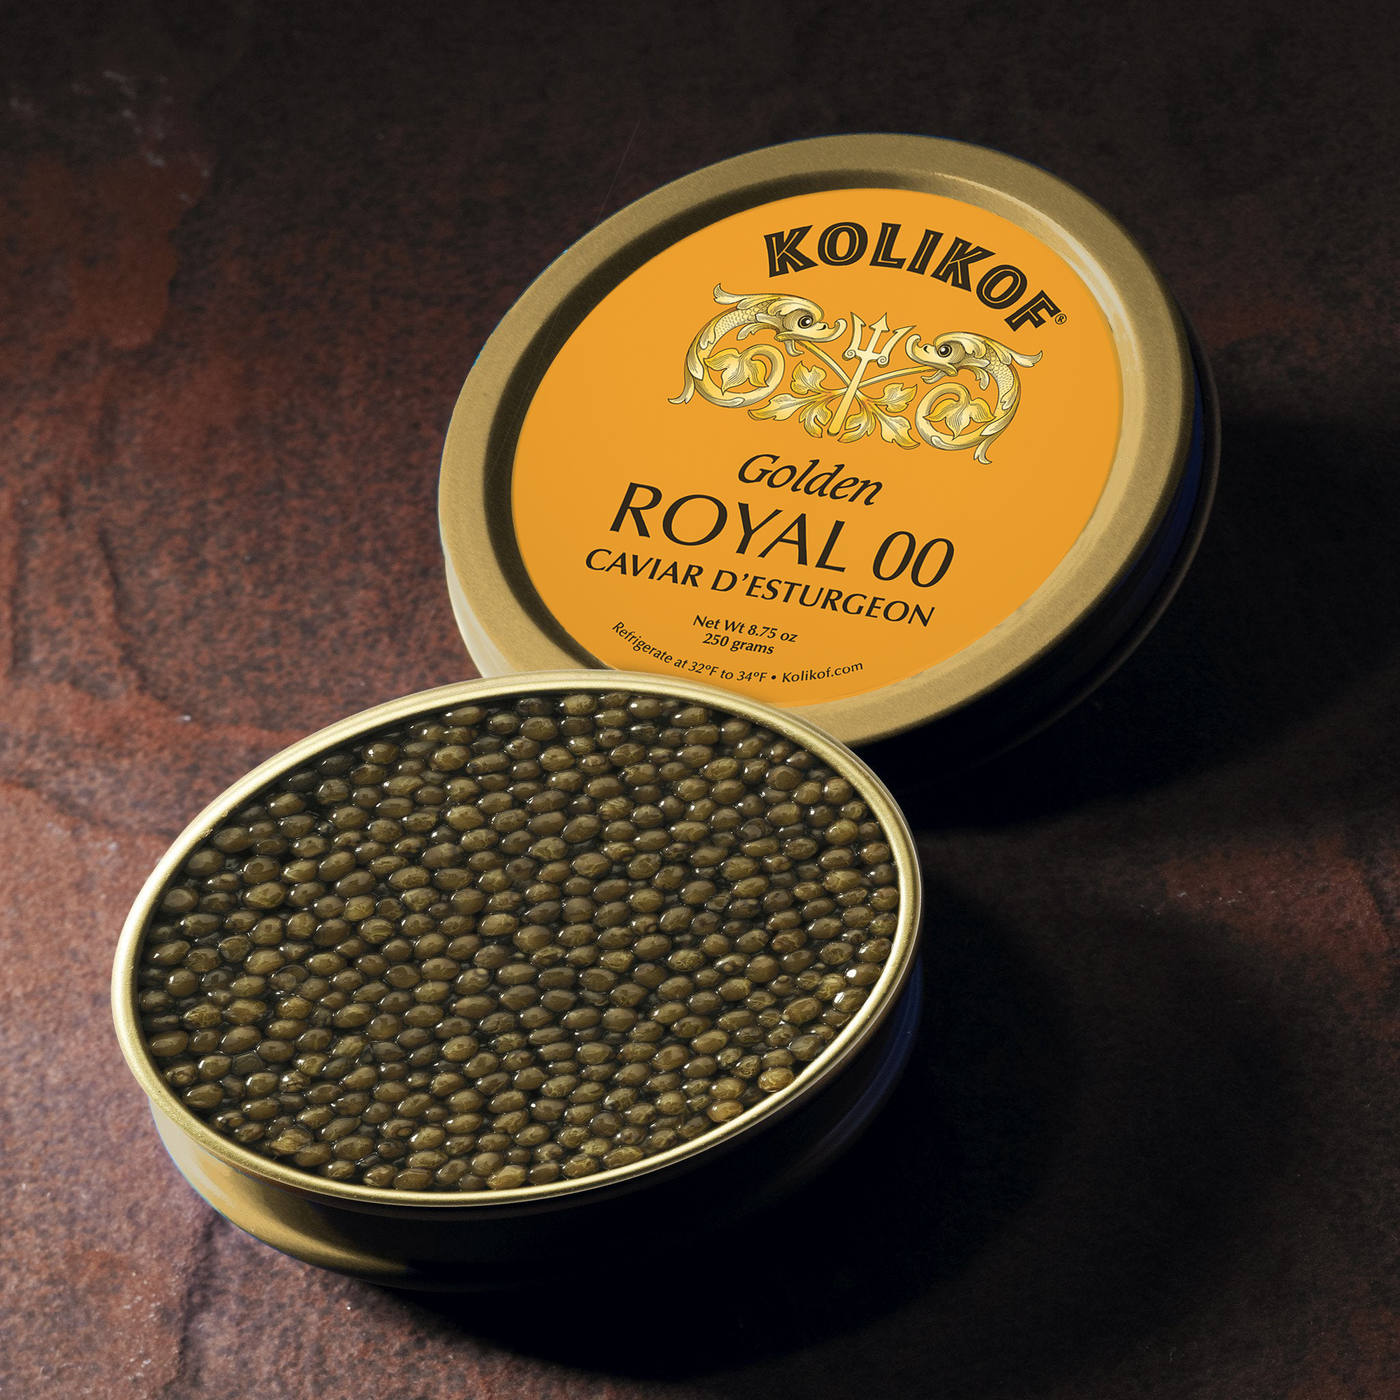 Golden Royal 00 Caviar